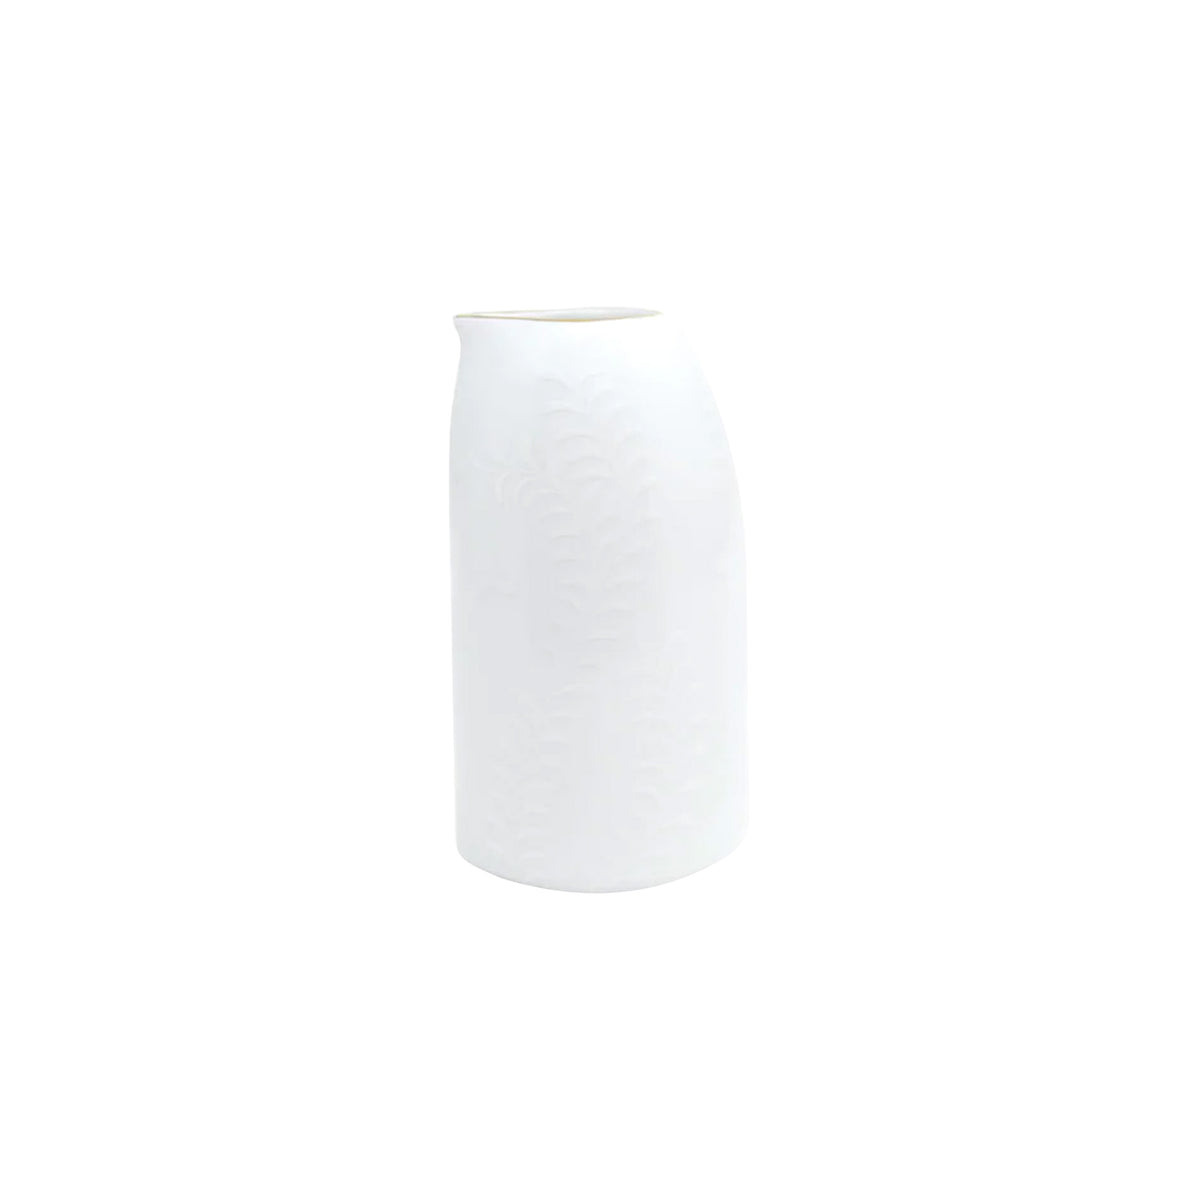 ARJUNA white on white mesh Gold - Sake jug, small